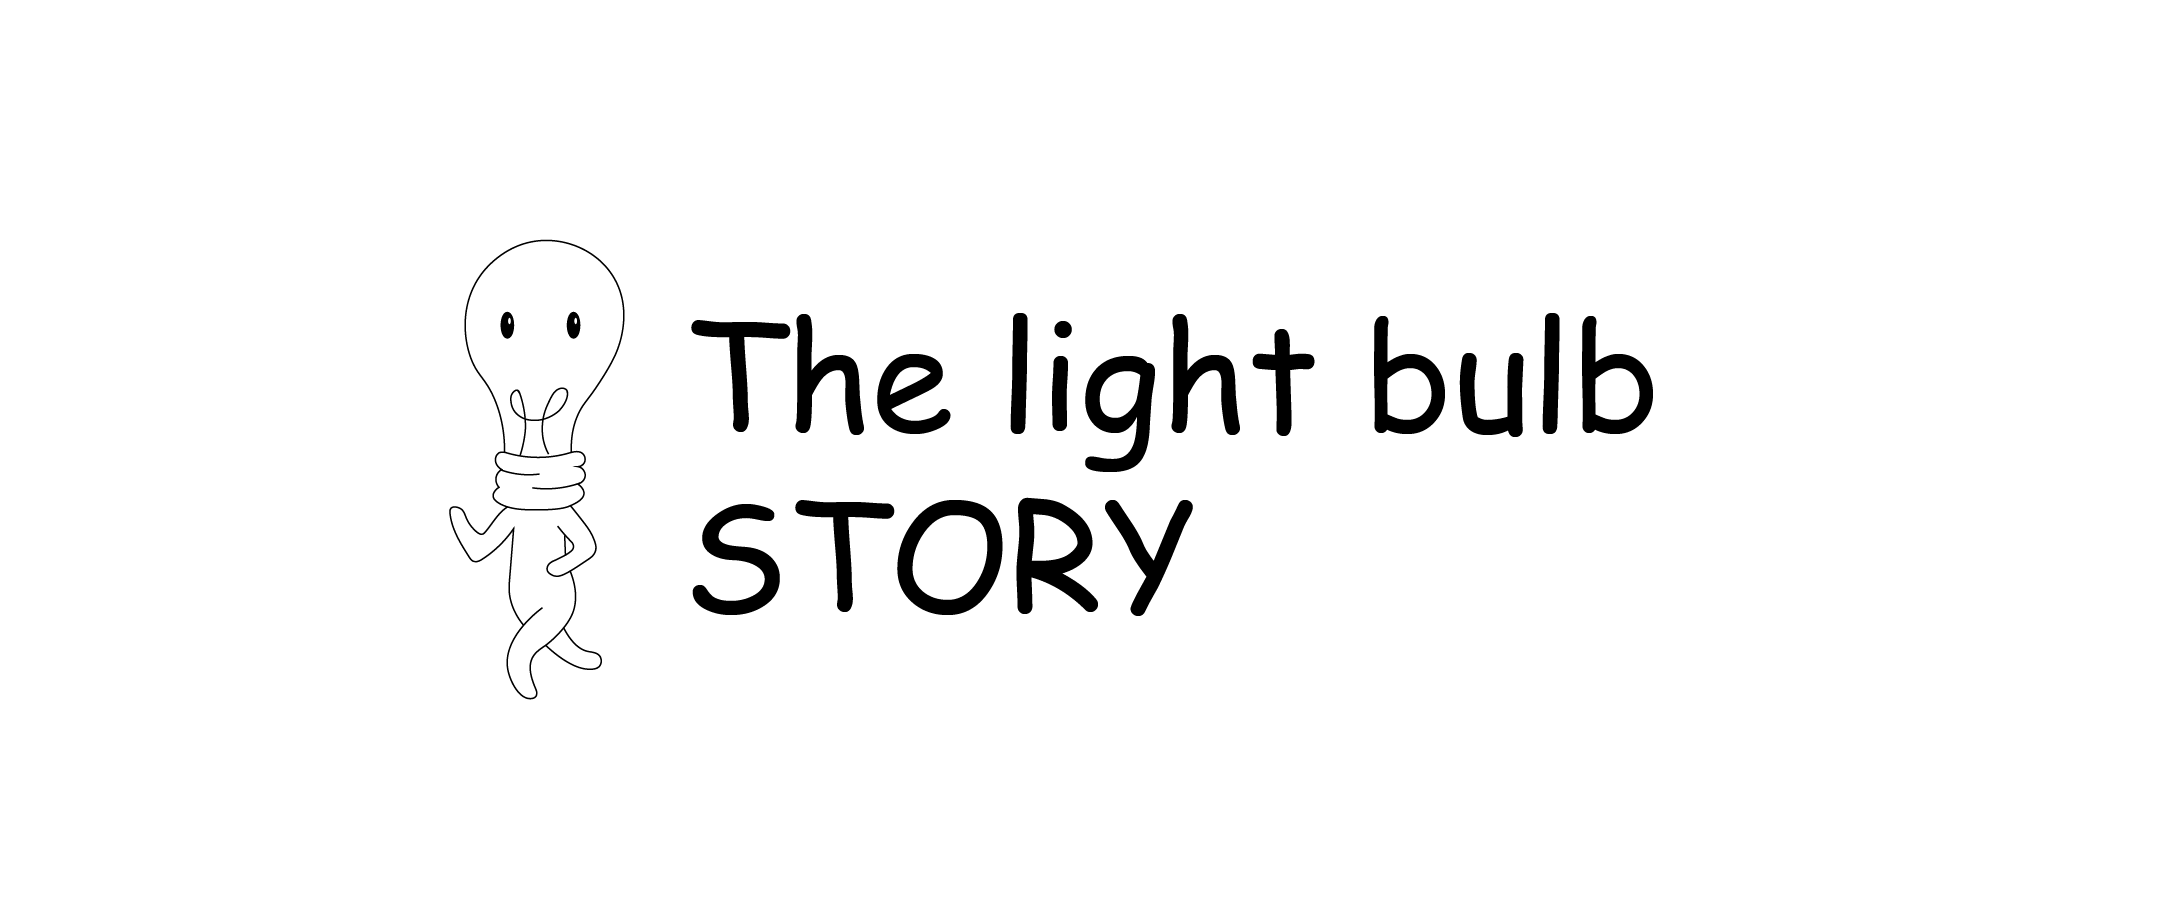 The light bulb STORY